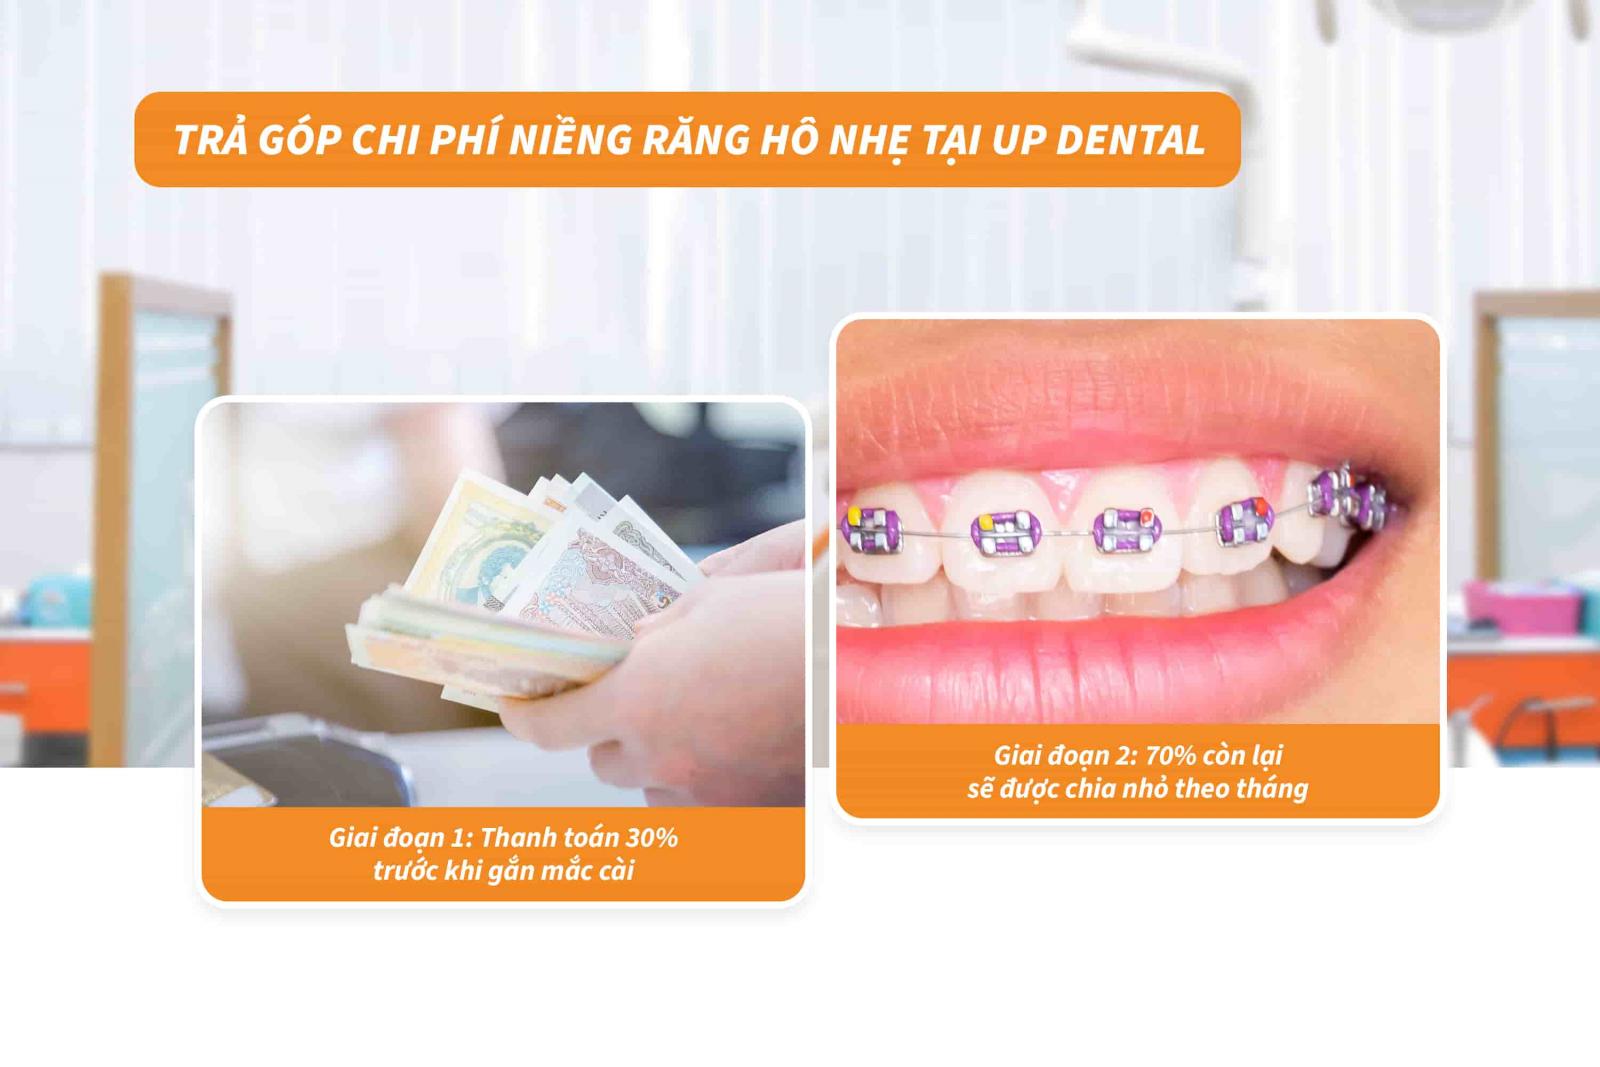 Trả góp chi phí niềng răng hô nhẹ tại Up Dental